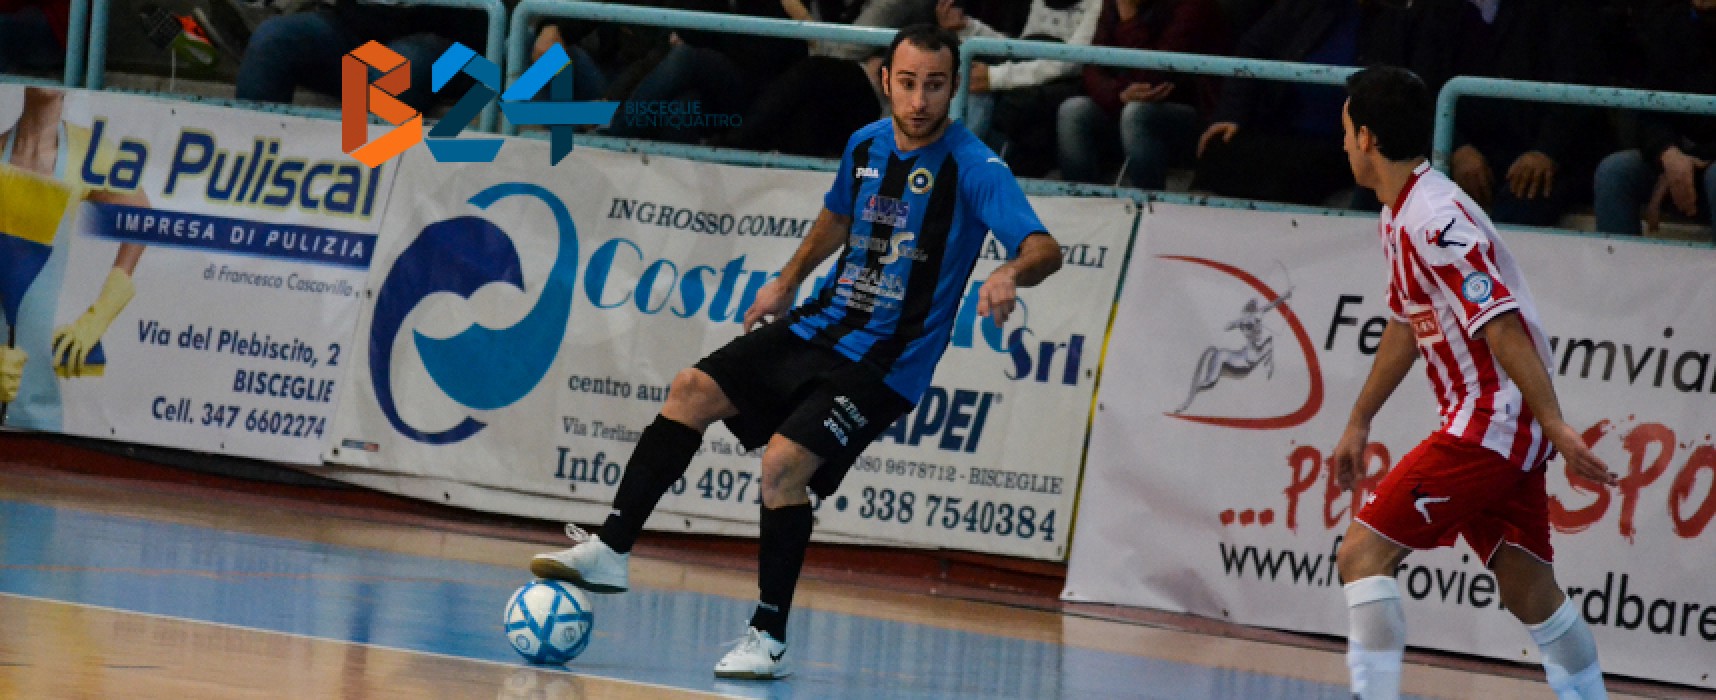 Futsal Bisceglie: domani arriva il temibile Real Dem, ufficiale il ritorno di “Sheva” De Cillis